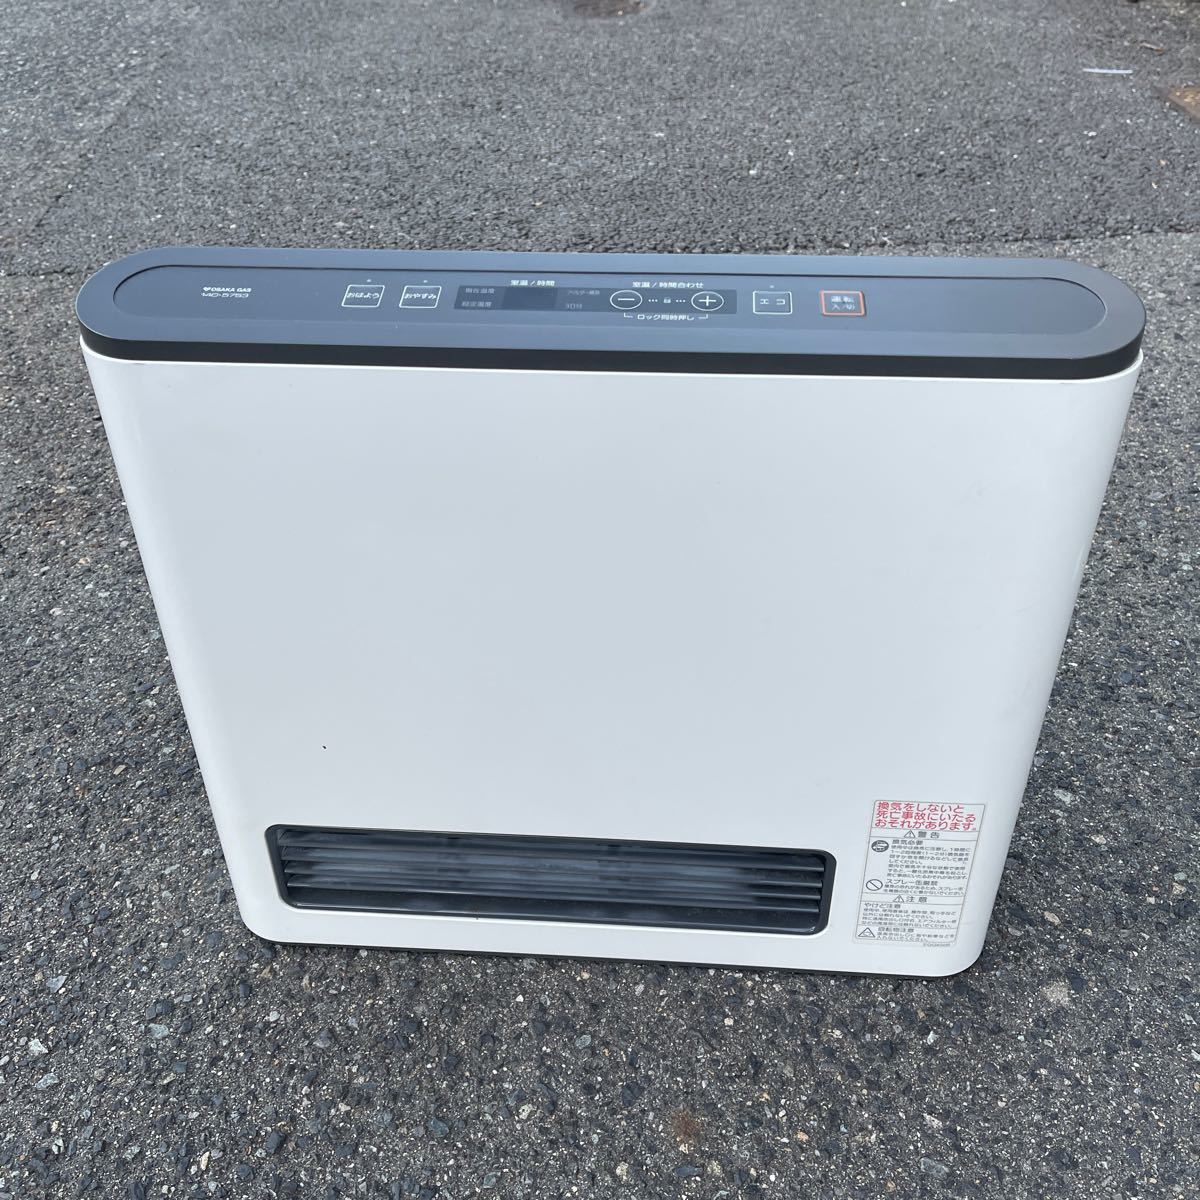 Обагас-газовый нагреватель вентилятор No-Ritsu Городской газ GFH-4002S 2013.05 или -9